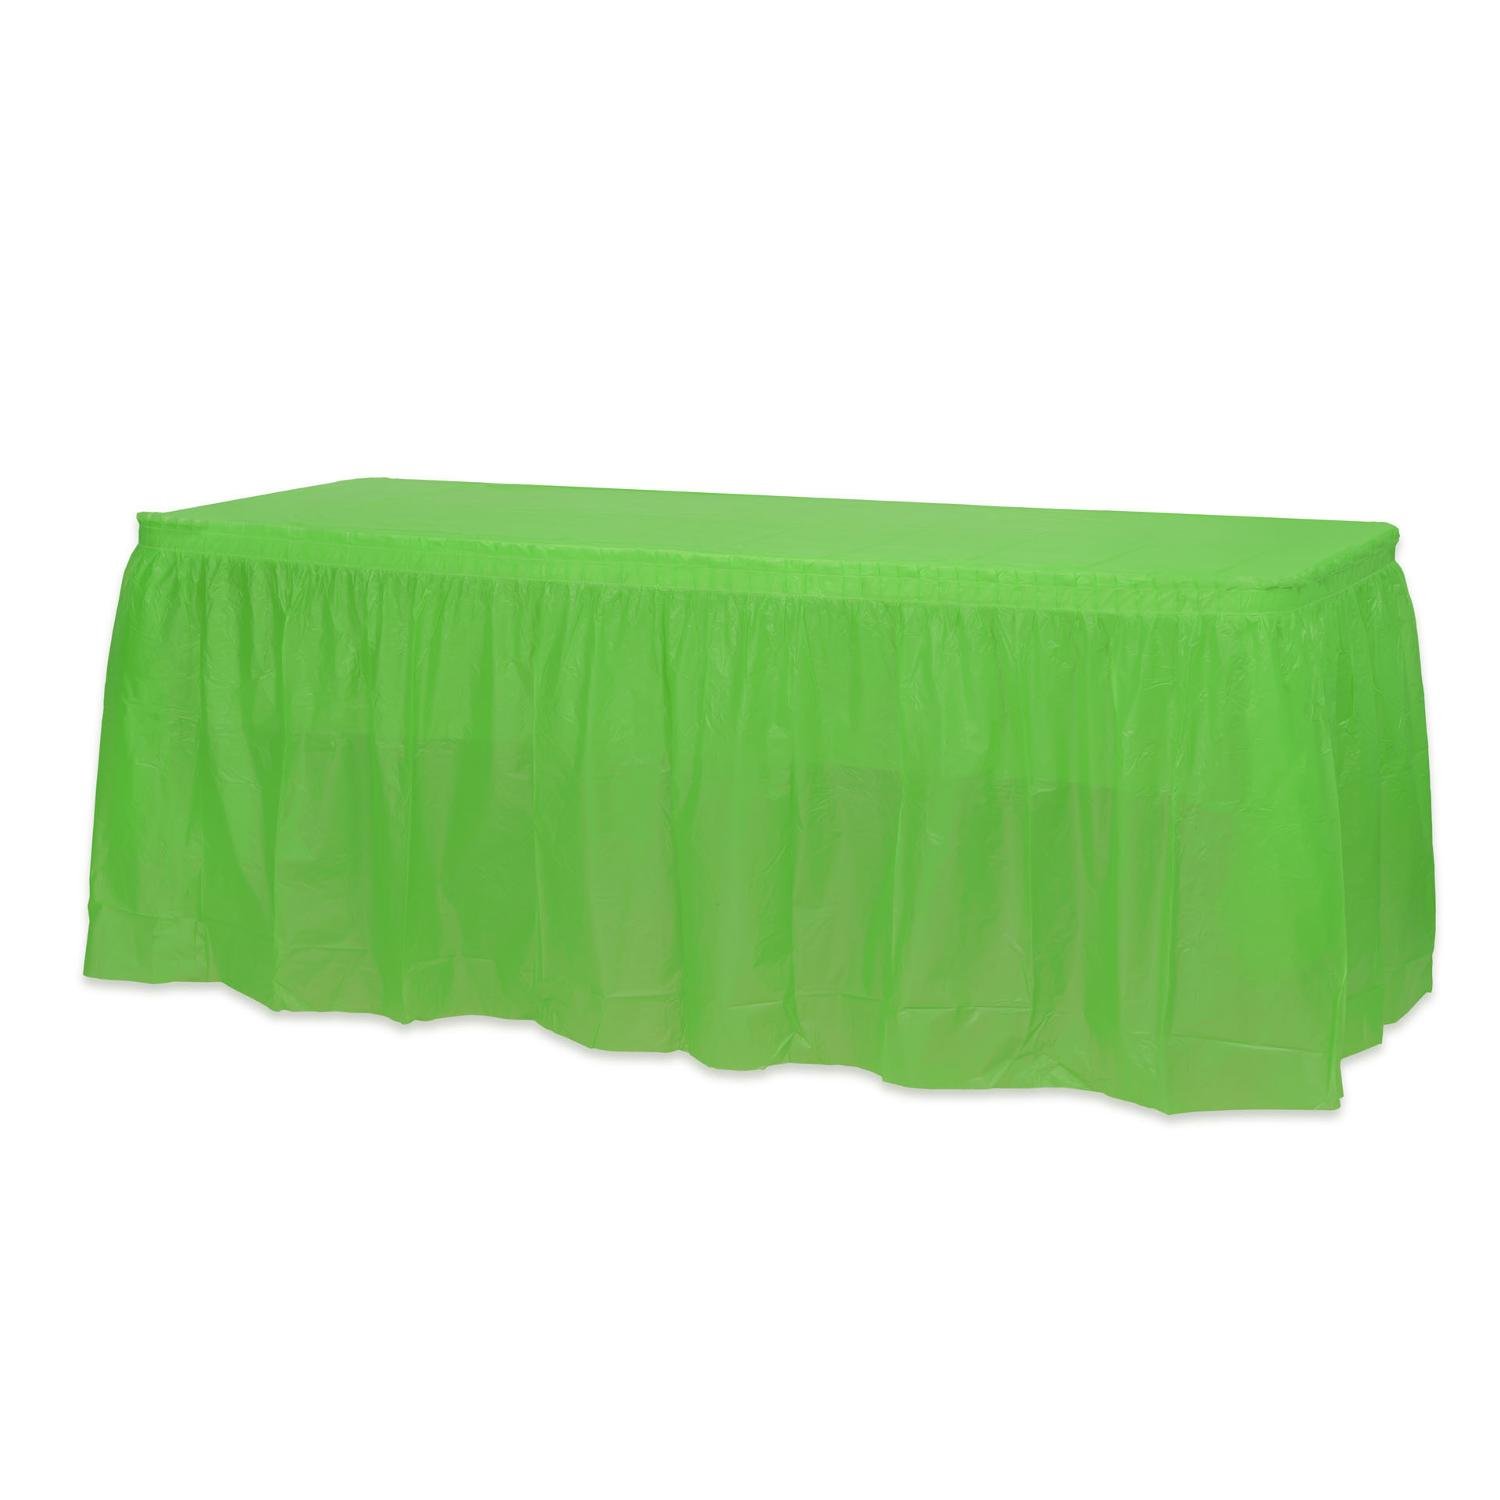 Lime Green Plastic Table Skirt